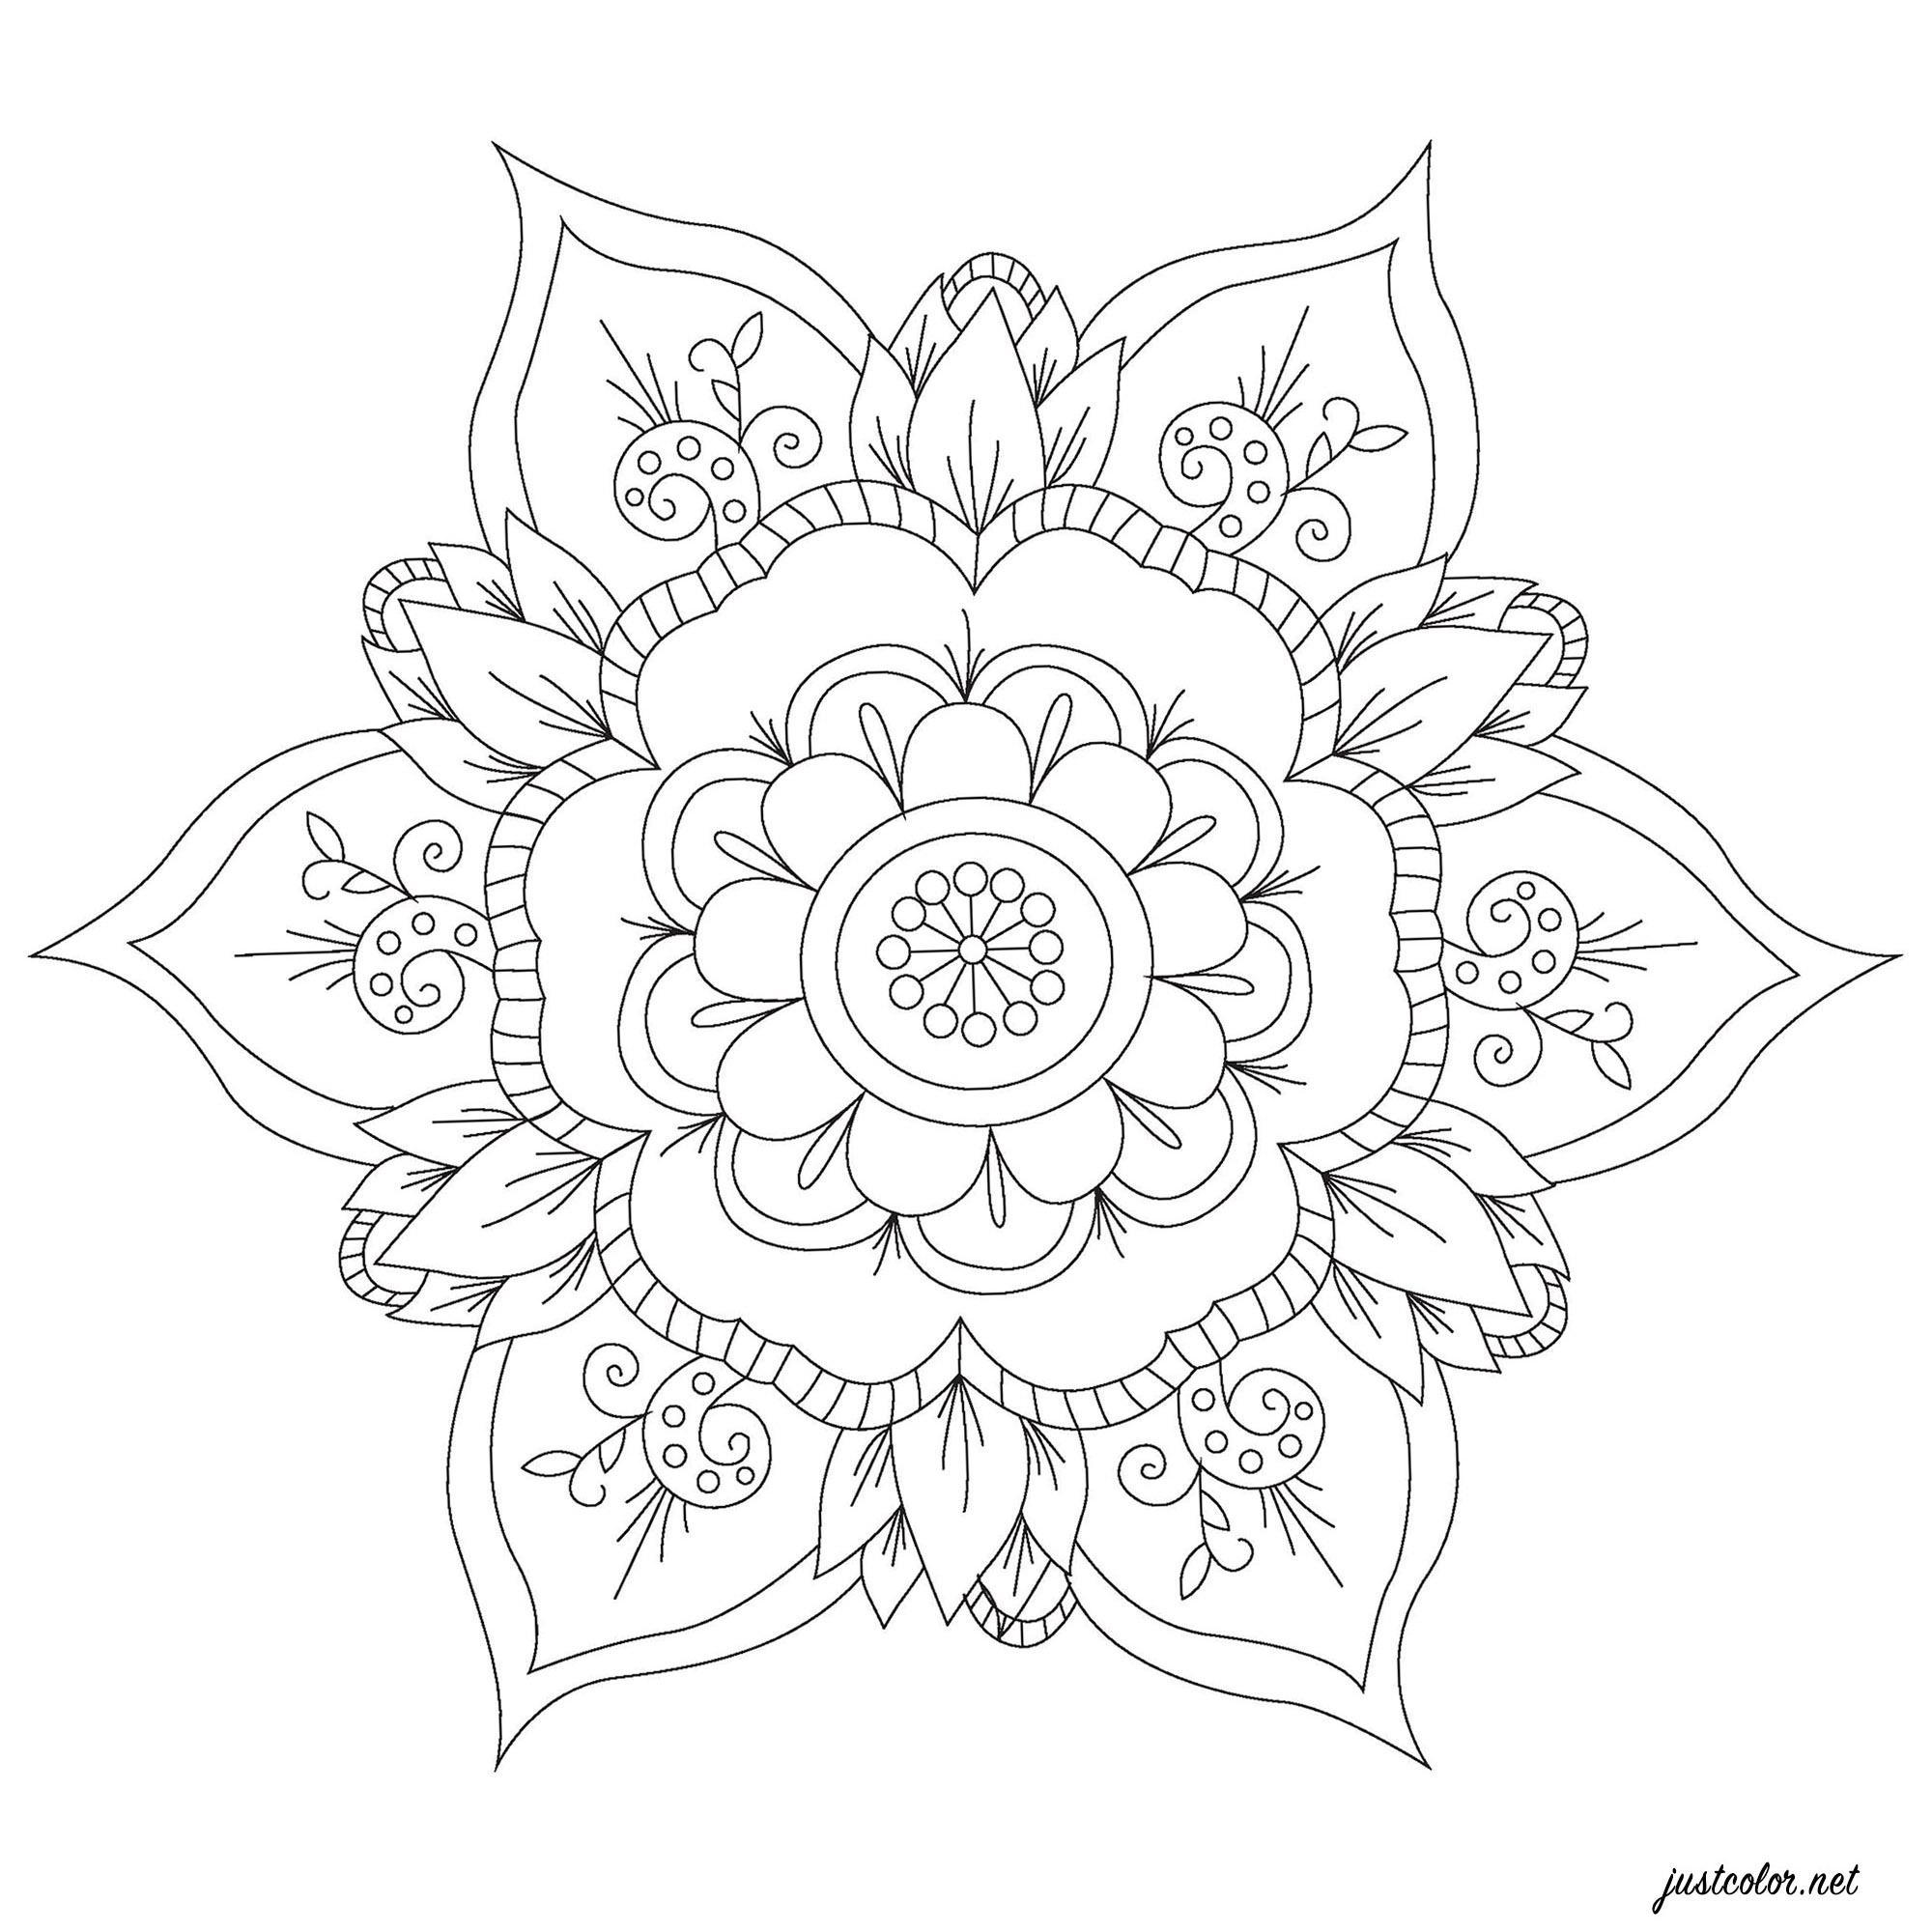 Mandala simples e gira com flores, pétalas e folhas harmoniosamente distribuídas, Artista : Pierre C